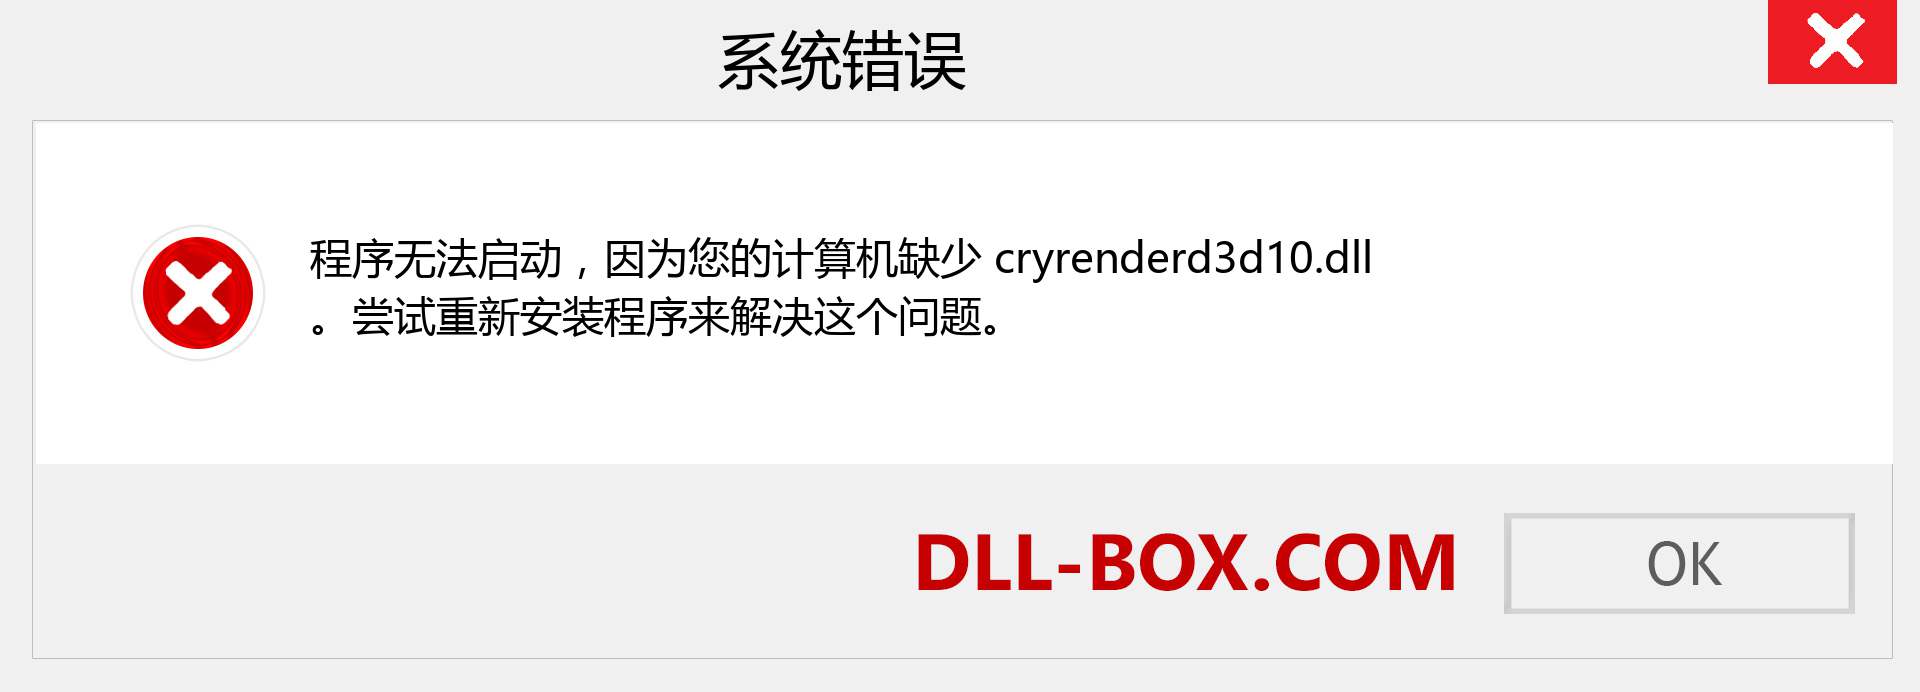 cryrenderd3d10.dll 文件丢失？。 适用于 Windows 7、8、10 的下载 - 修复 Windows、照片、图像上的 cryrenderd3d10 dll 丢失错误